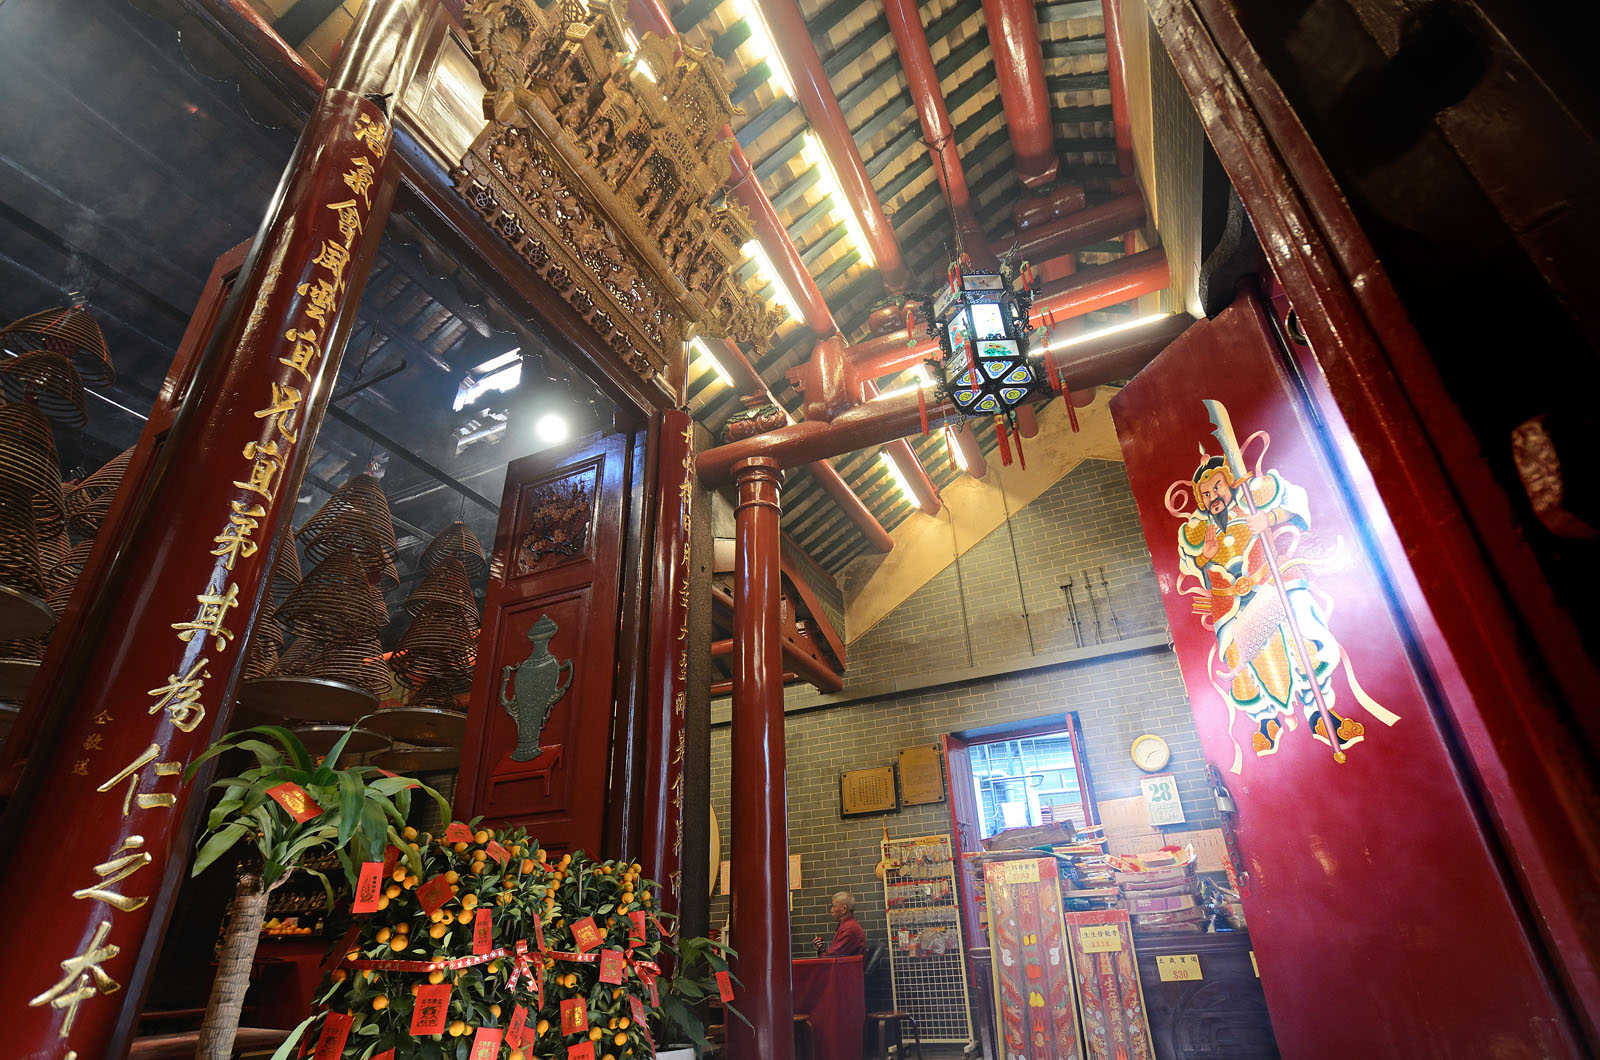 Photo 4: Kwan Tai Temple (Sham Shui Po)